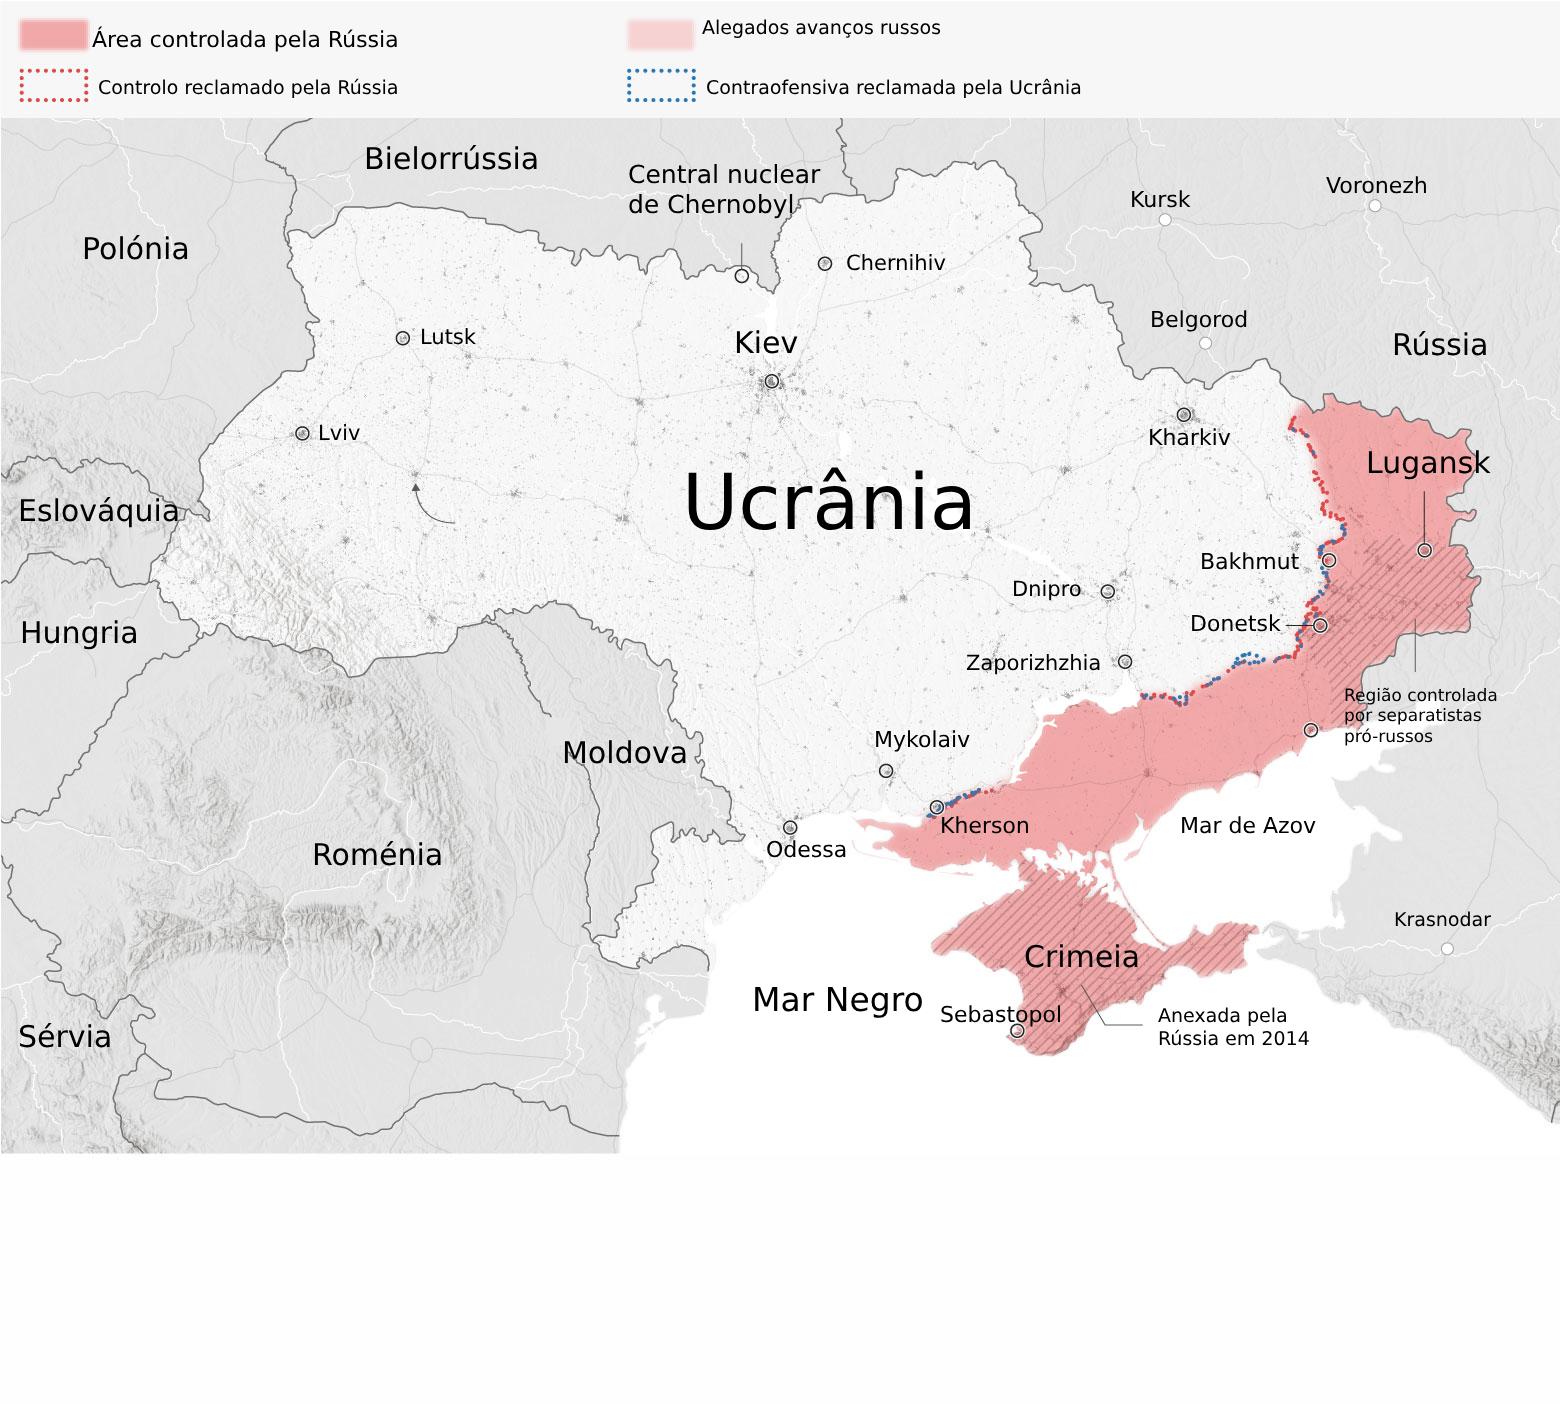 a bandeira russa já está em avdiivka. segue-se mais pressão sobre uma ucrânia vulnerável